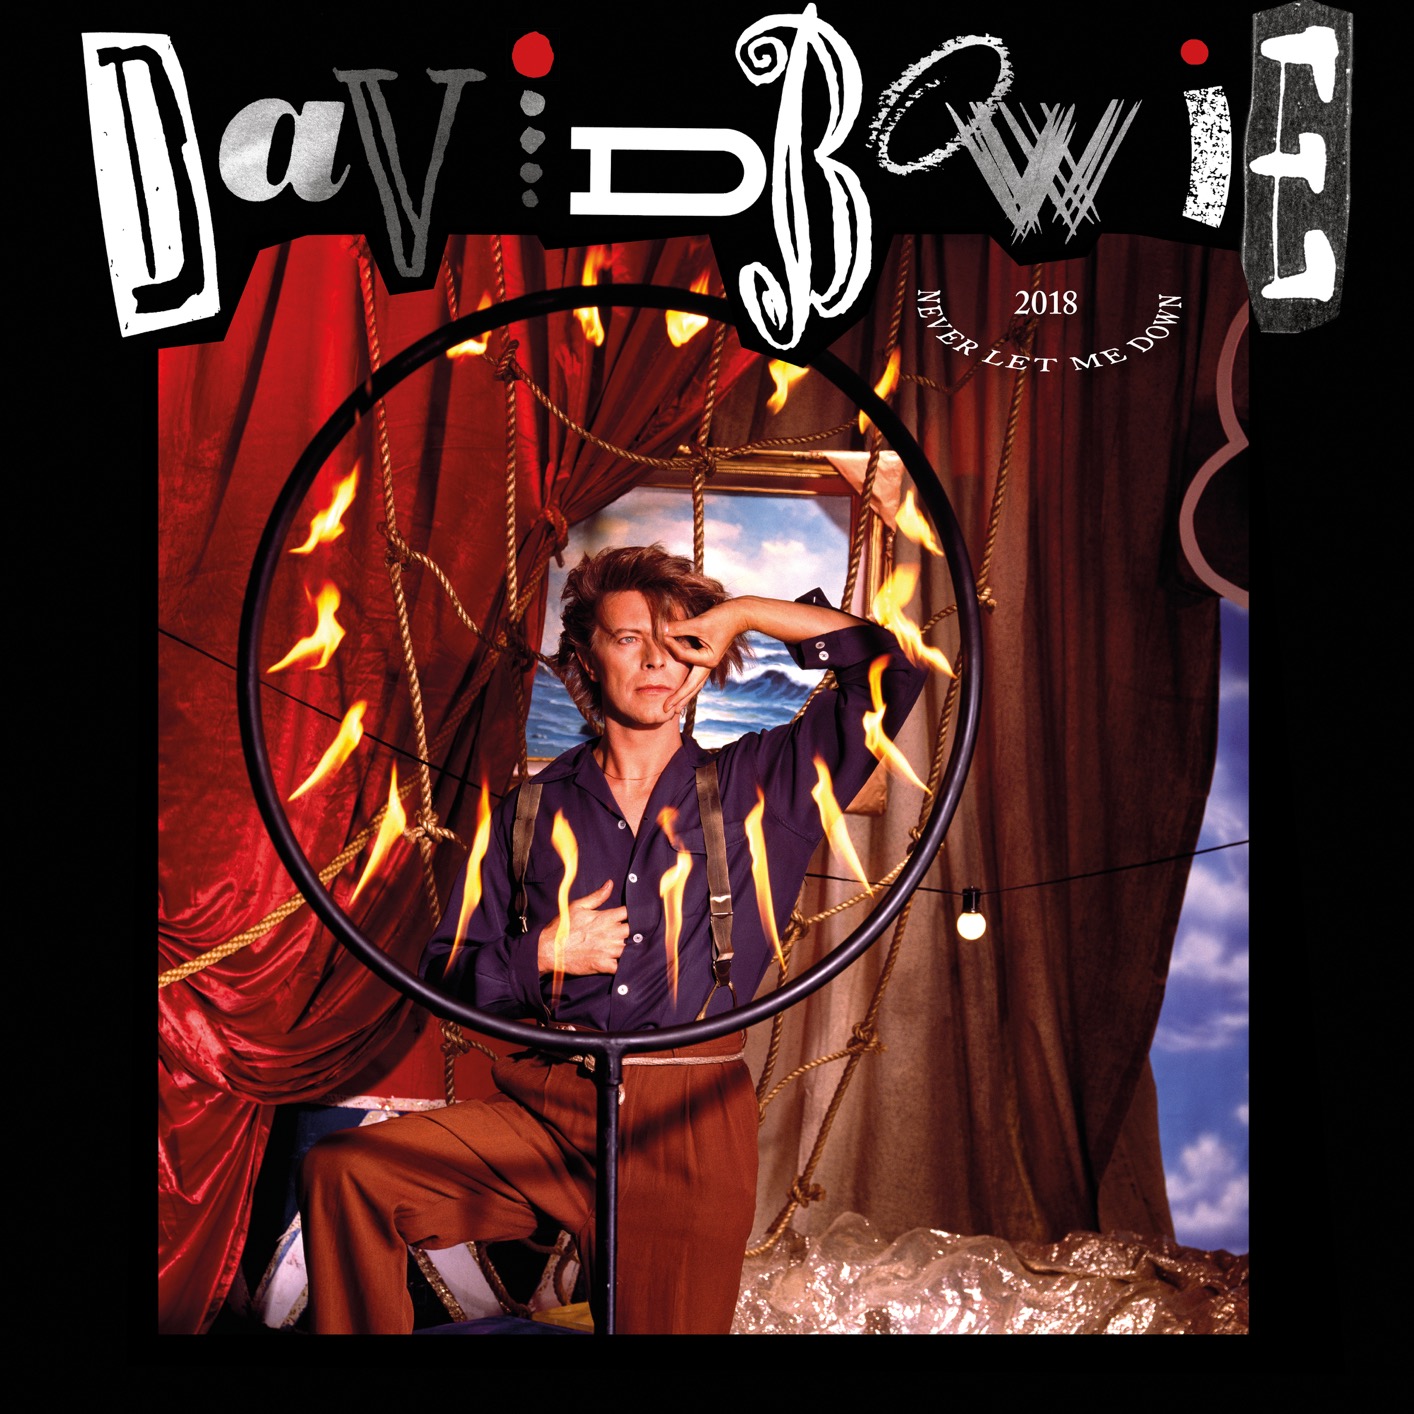 David Bowie - Never Let Me Down (2018 Remaster) (2019) [FLAC 24bit/96kHz]